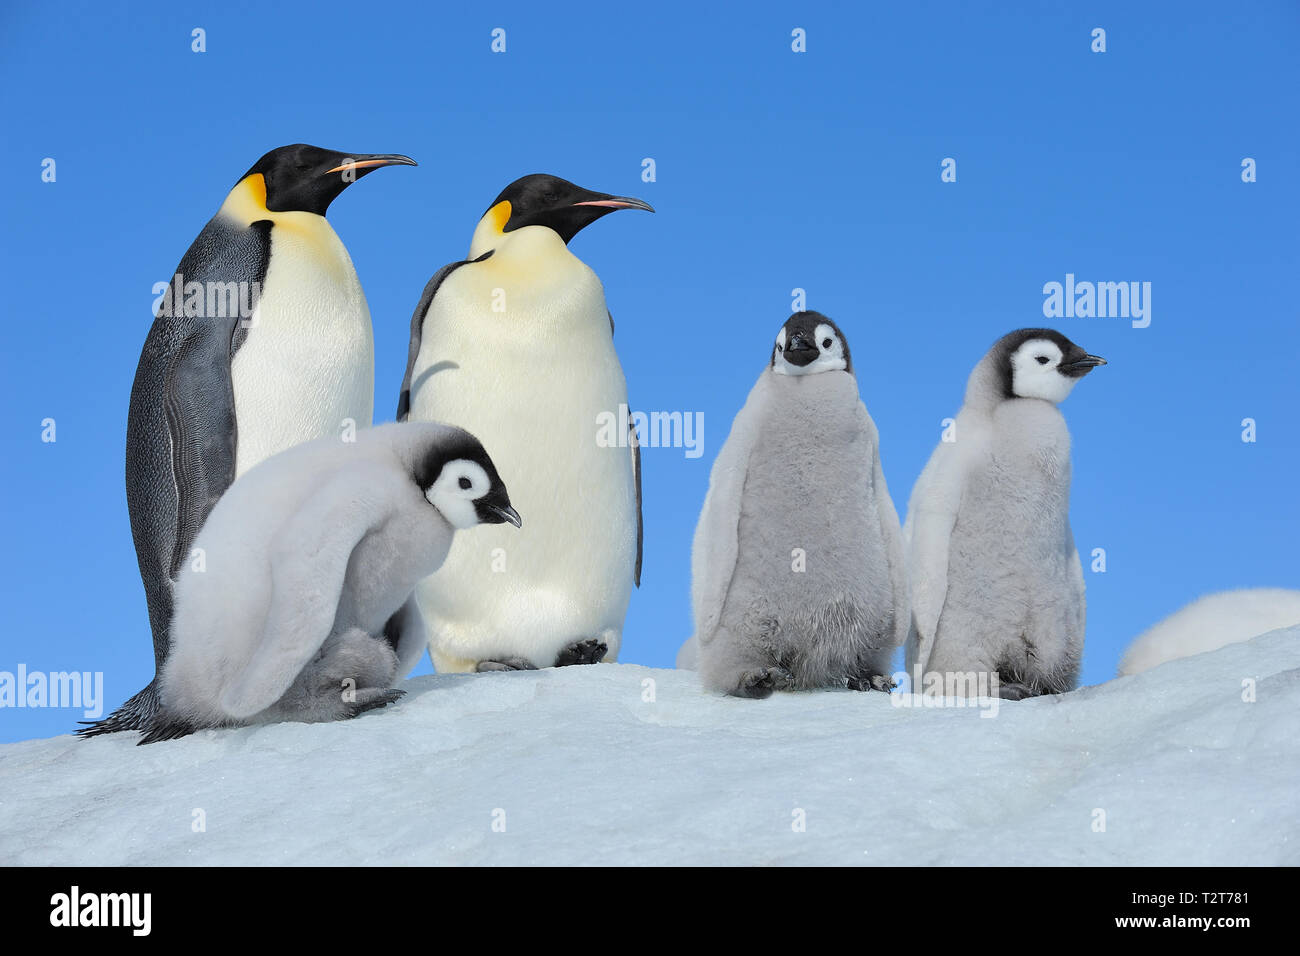 Pinguini imperatore, Aptenodytes forsteri, coppia di pulcini, Snow Hill Island, Penisola Antartica, Antartide Foto Stock